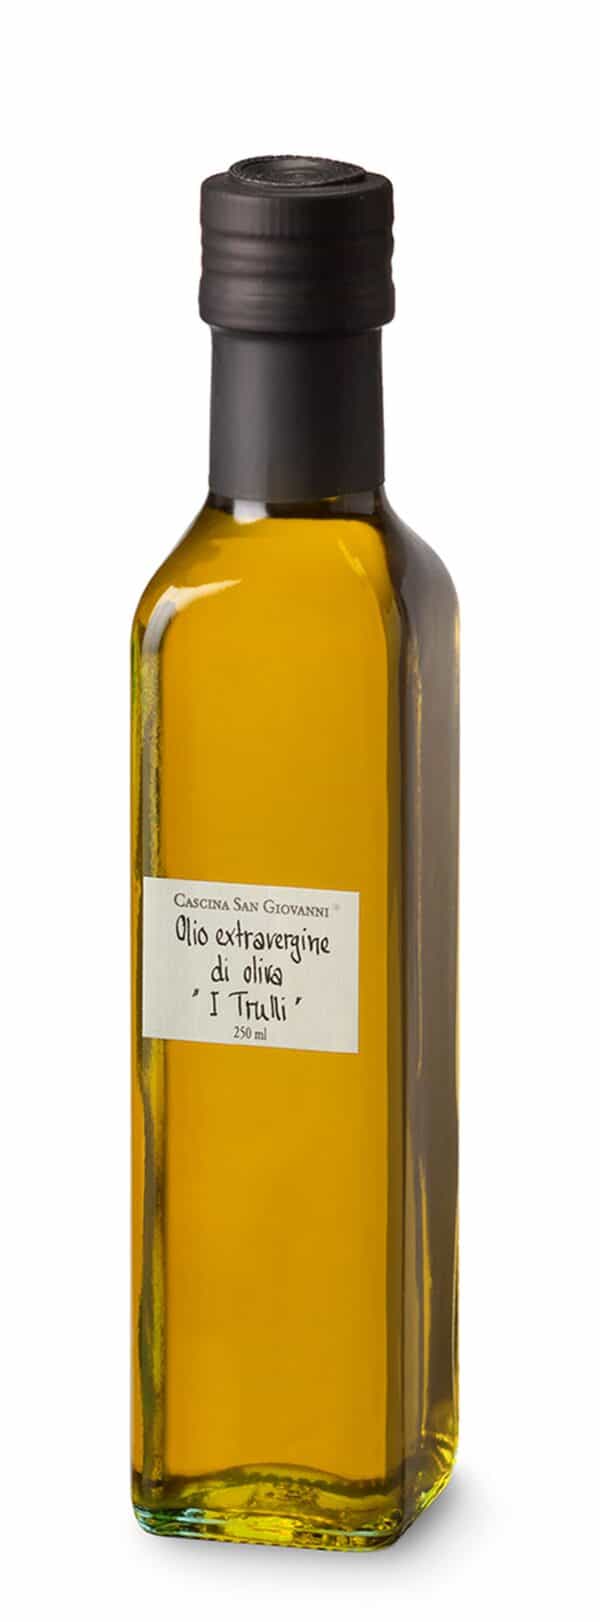 Olio extravergine di oliva I Trulli